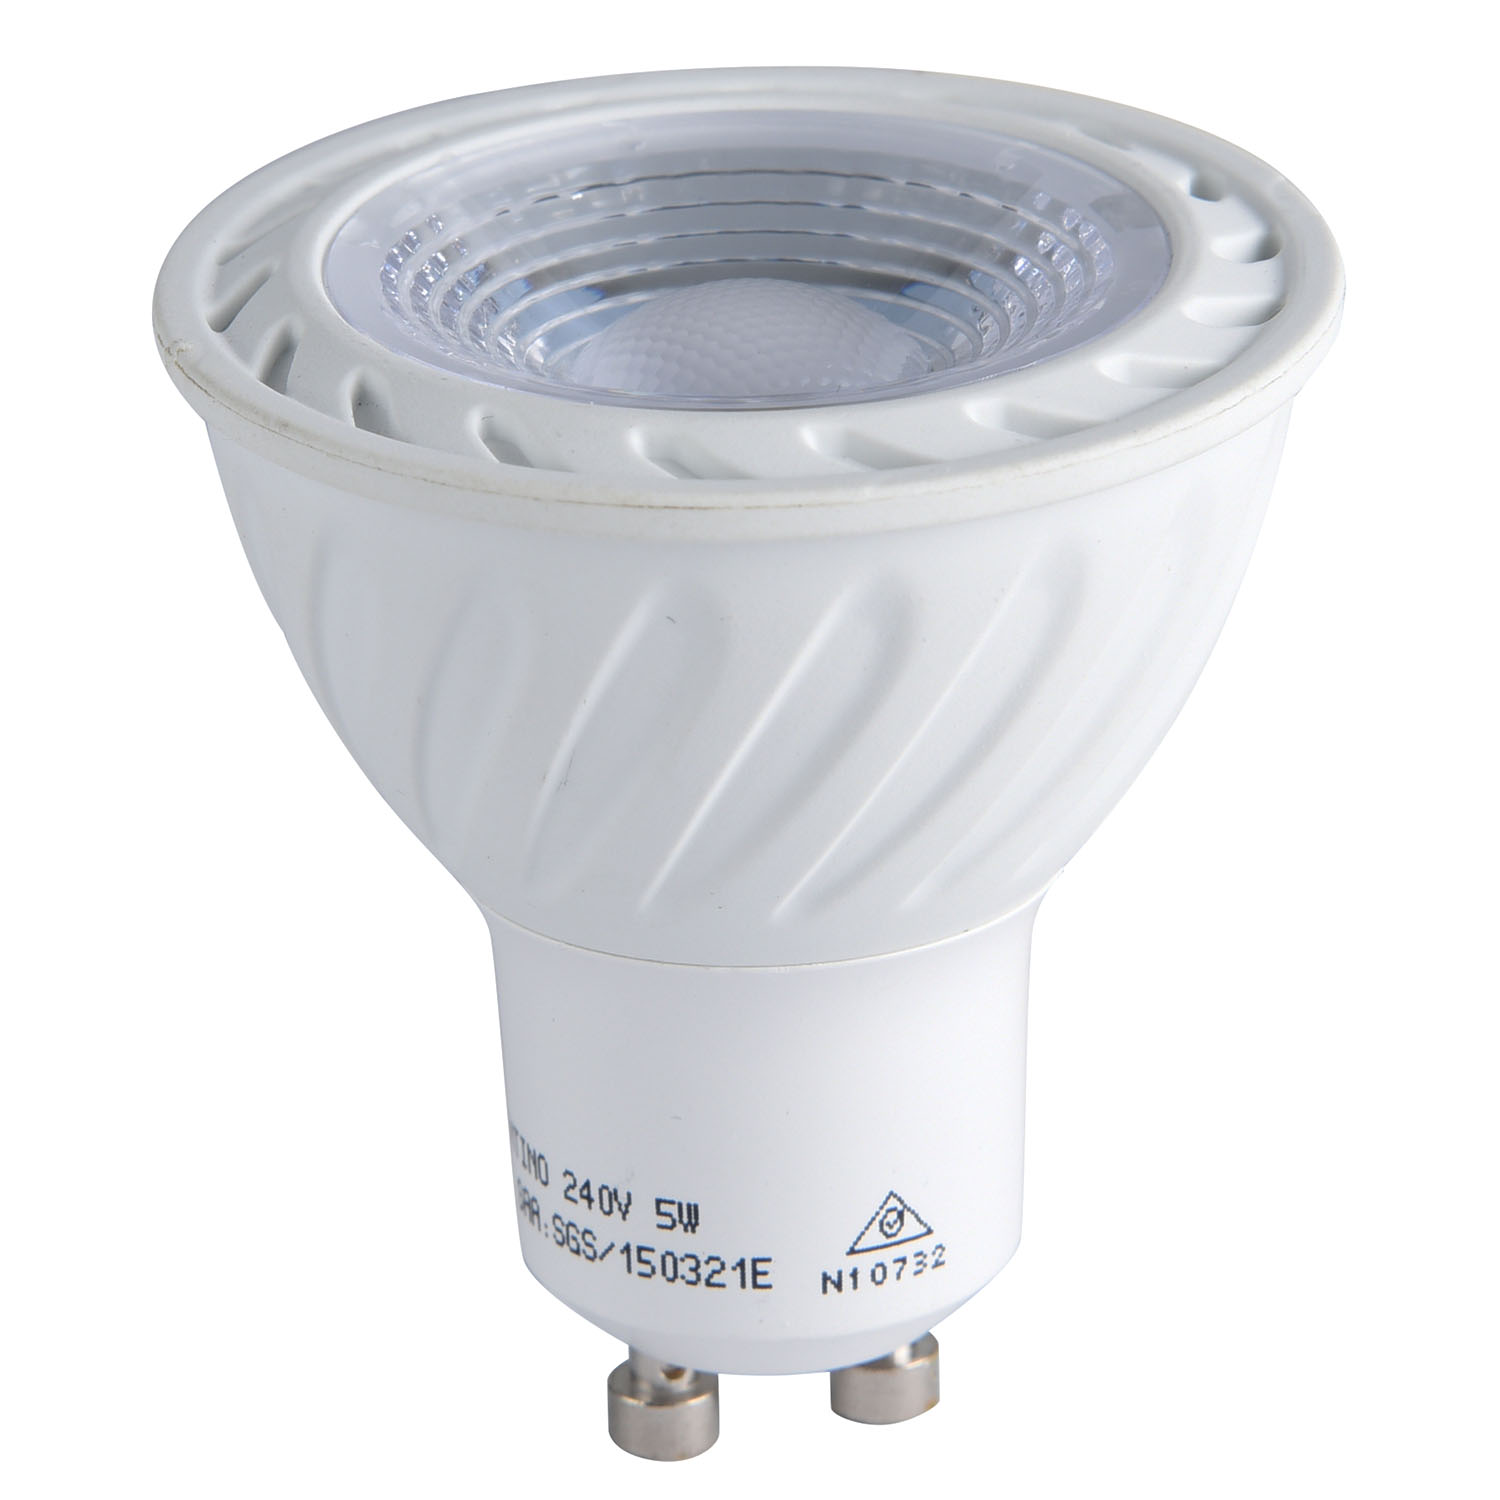 SMD GU10 LED Spot Light 38°/60°